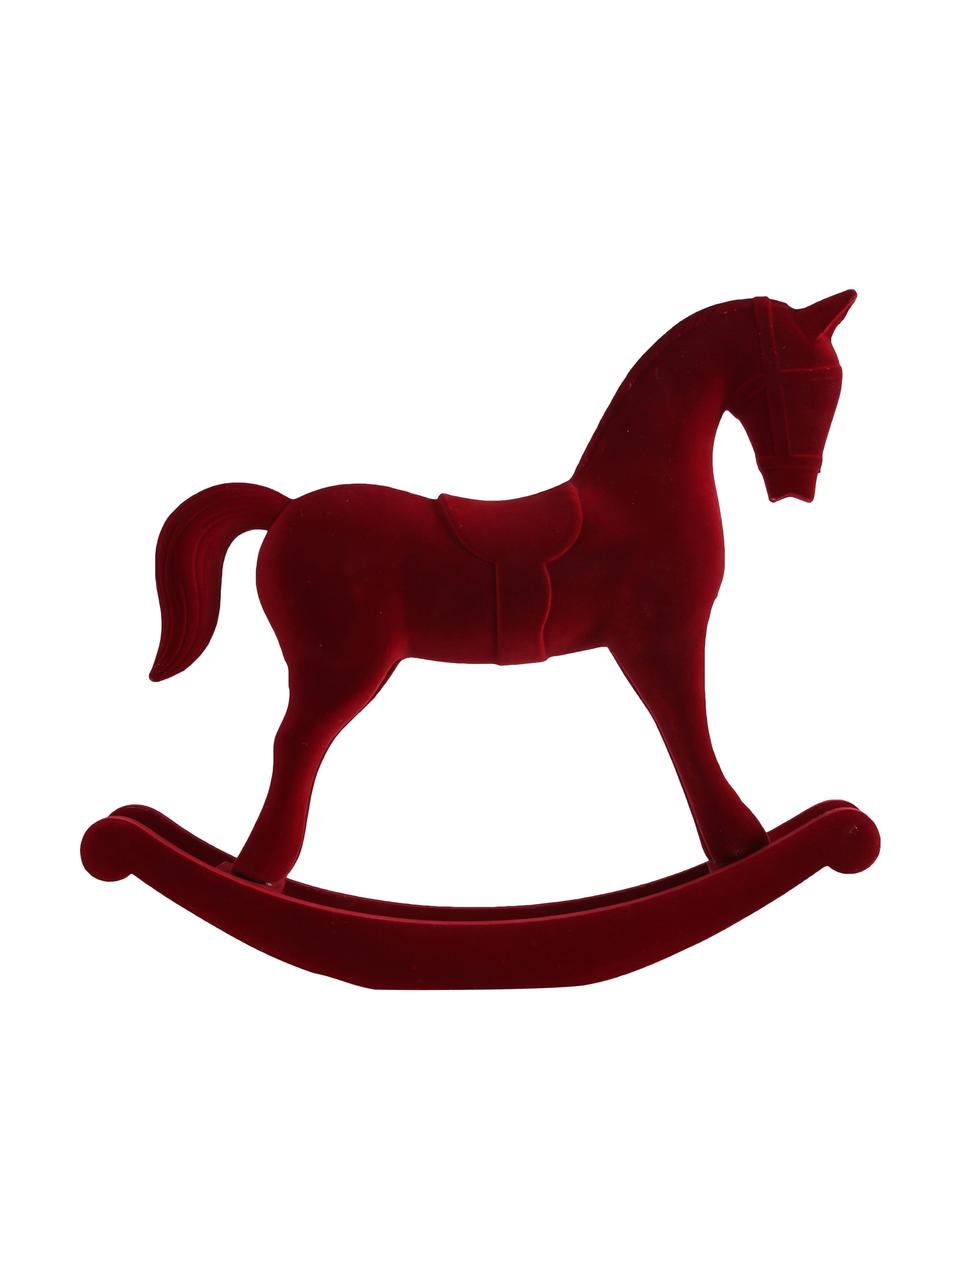 Dekoracja z aksamitu Rocking Horse, Tapicerka: aksamit, Stelaż: płyta pilśniowa średniej , Czerwony, S 38 x W 31 cm